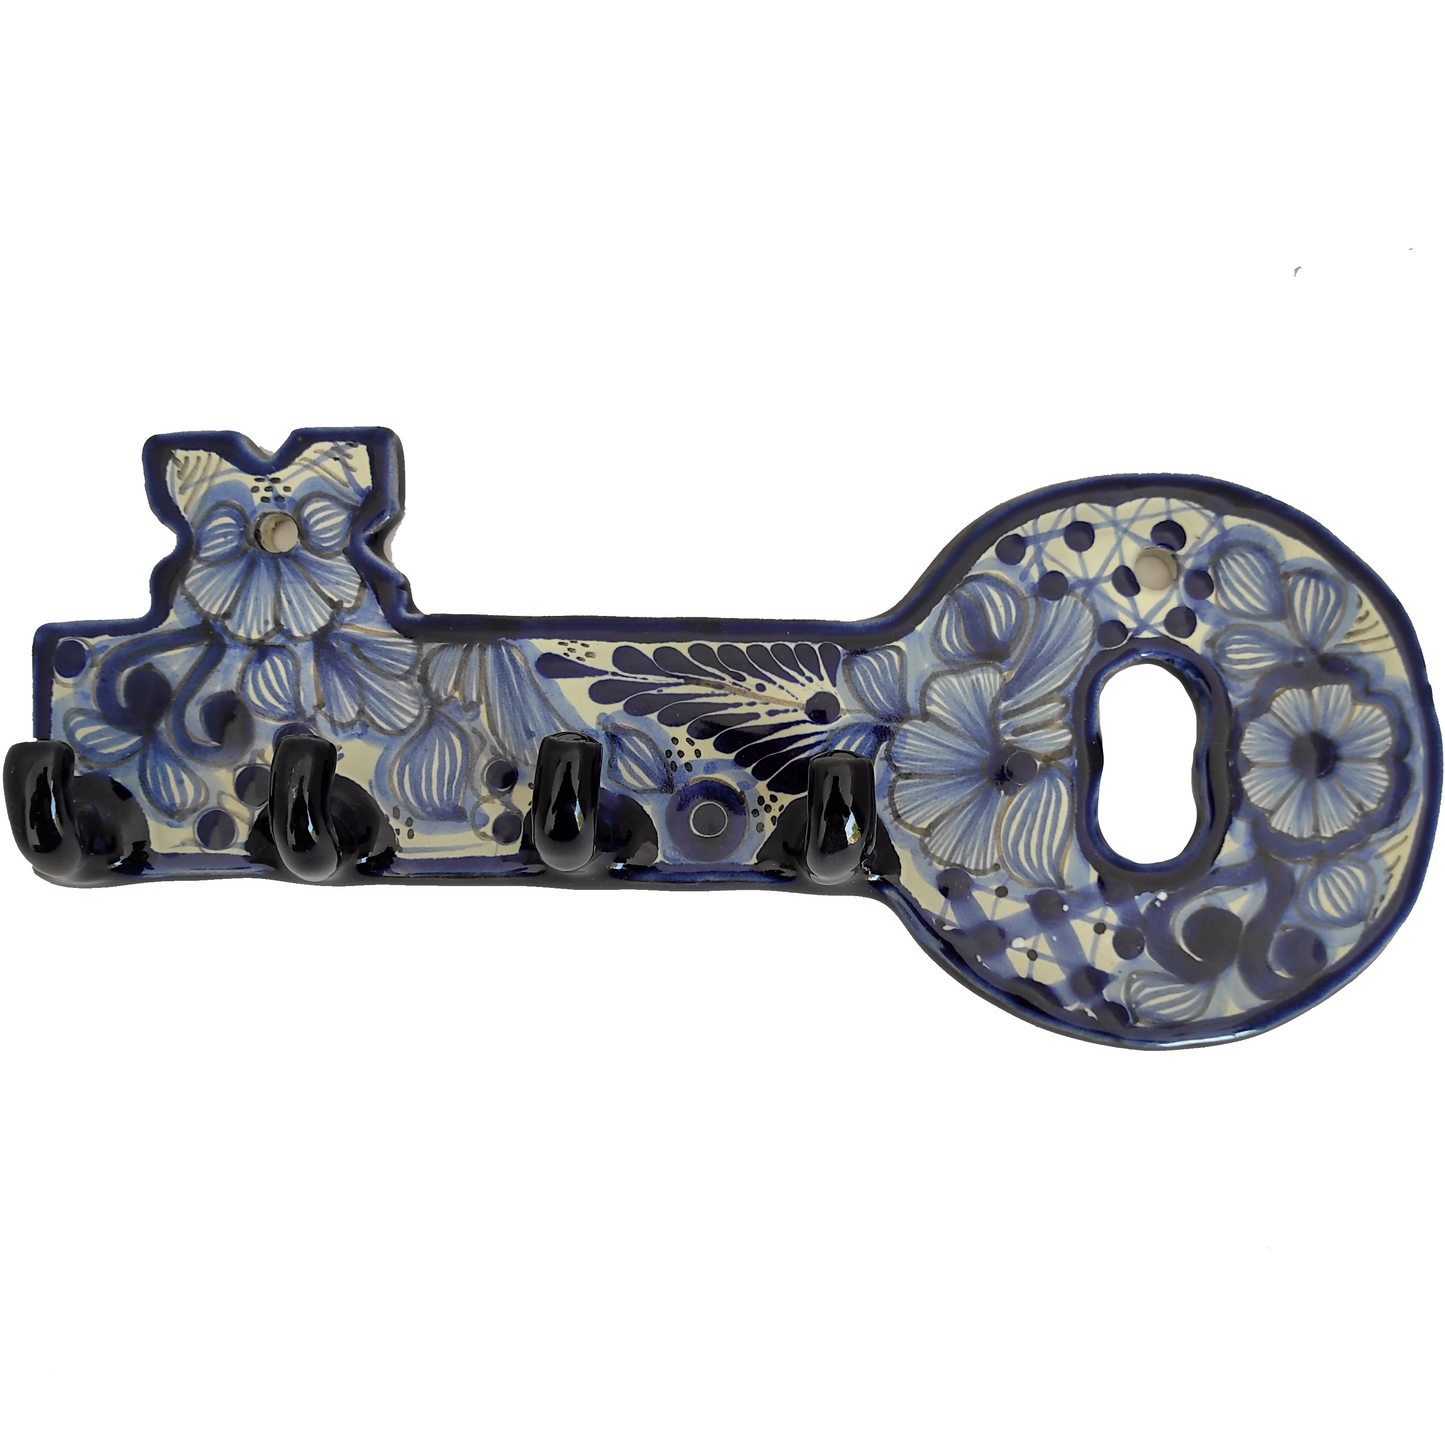 Porta llaves de llave | Talavera 100% original